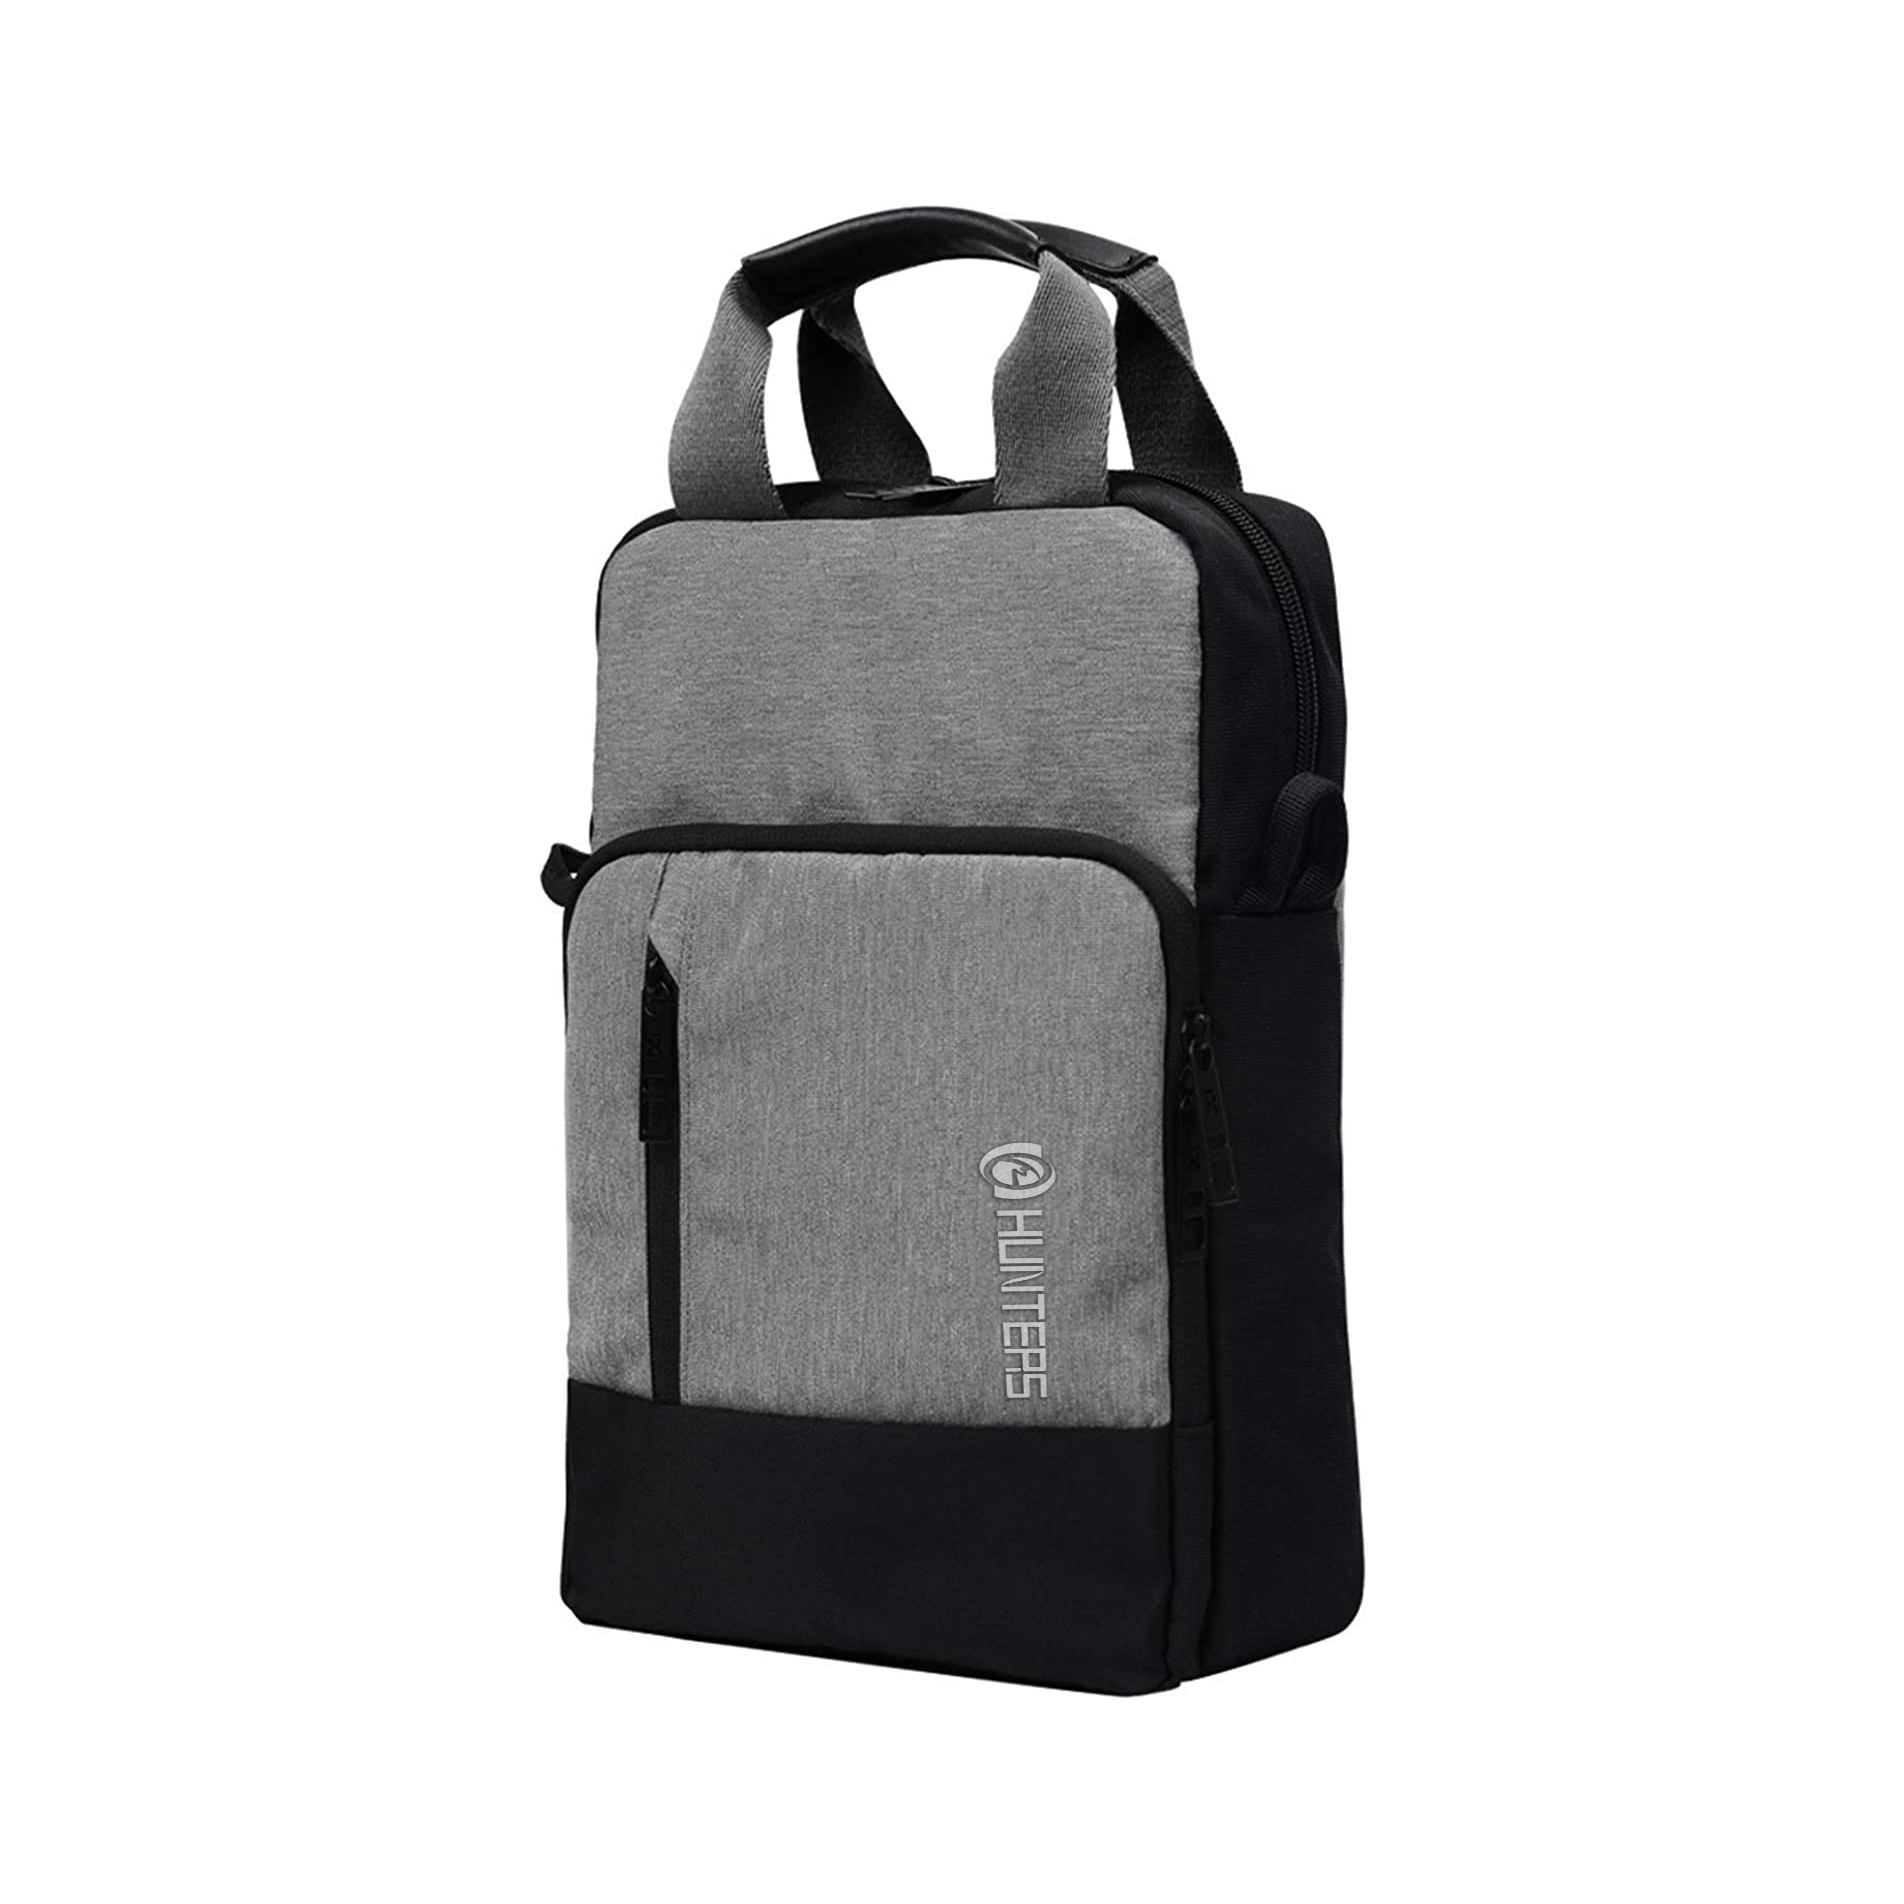 Shoulder Bag For Women Small Tablet Bag Sturdy Satchel Style Purse Outdoor Messenger Bag Sling Bag for Men